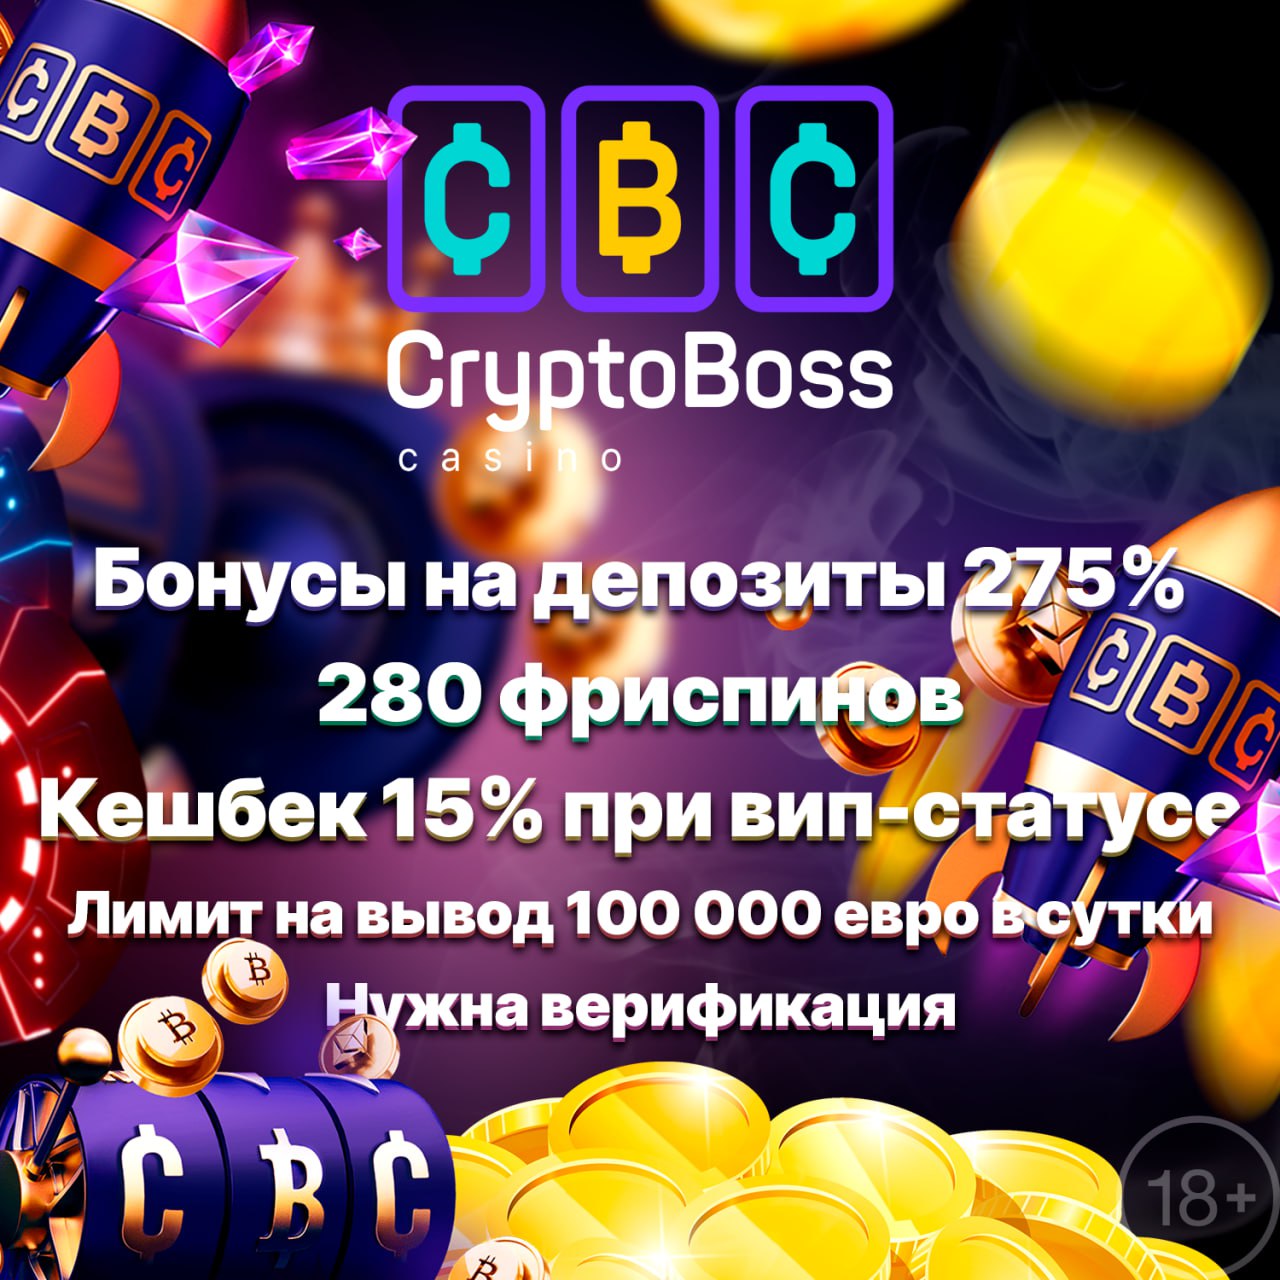 Cryptoboss casino бонусы cryptoboss casino 2 live. Криптобос. CRYPTOBOSS.